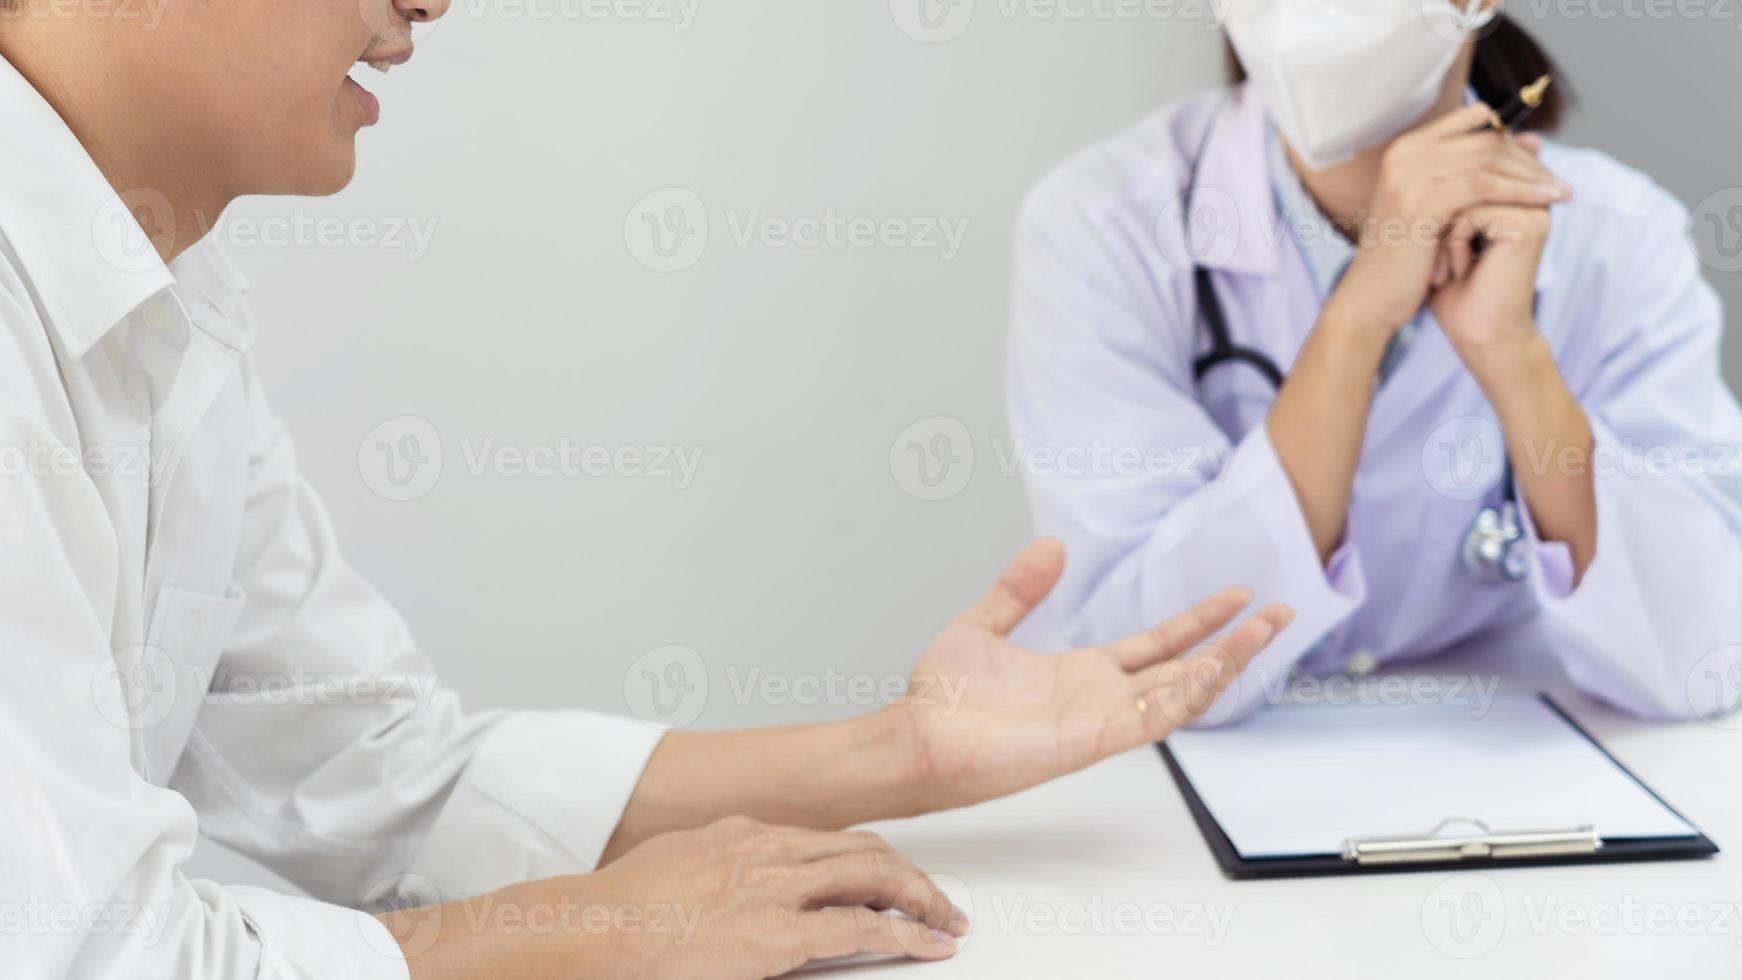 patiënt luistert aandachtig naar arts die symptomen uitlegt, medische informatie, preventie, ziekten en diagnose, in een medische kliniek of ziekenhuisgezondheidszorgcentrum. foto